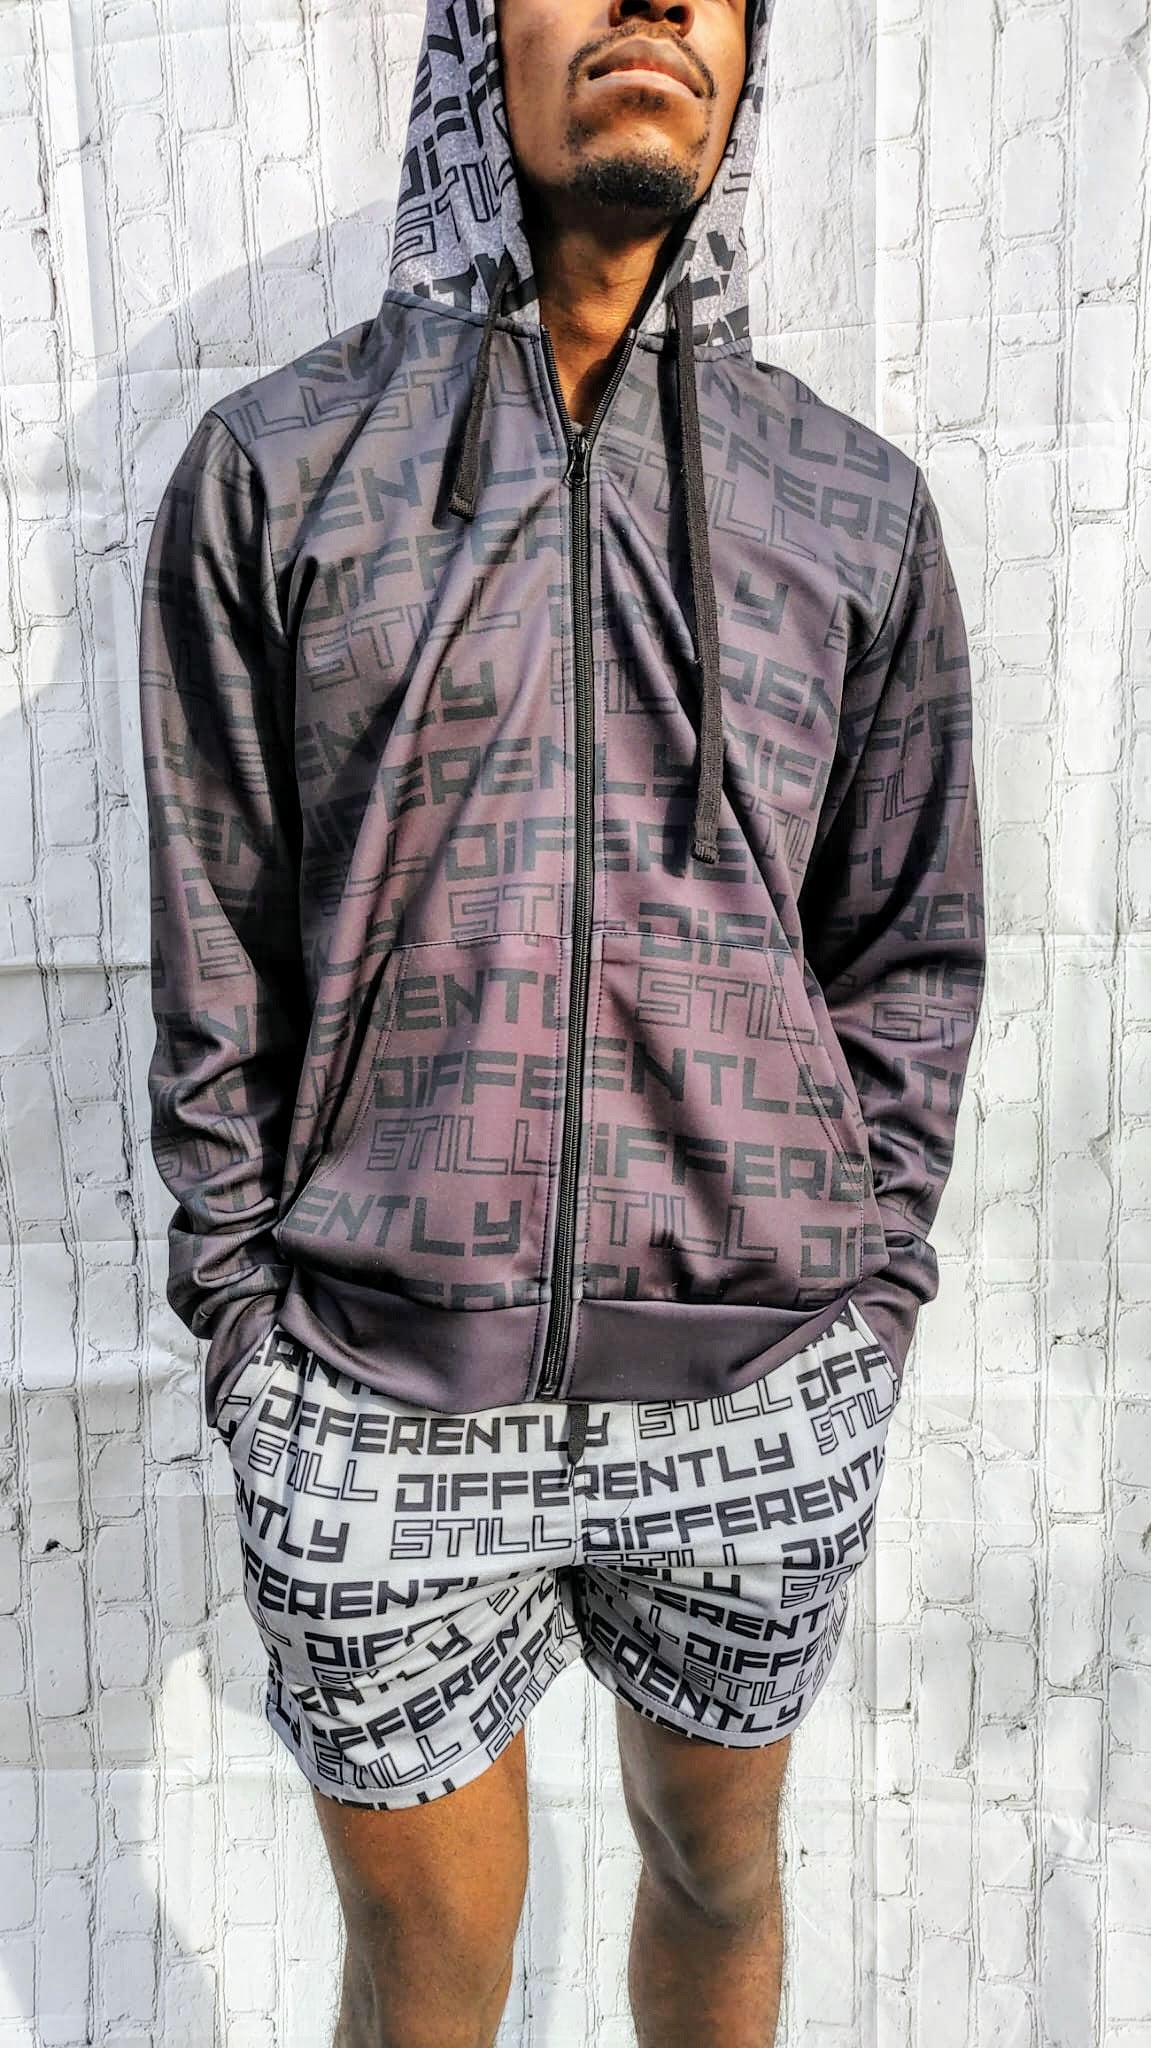 Duntalk "Differently" Zip Up Hoodie Jacket - Black